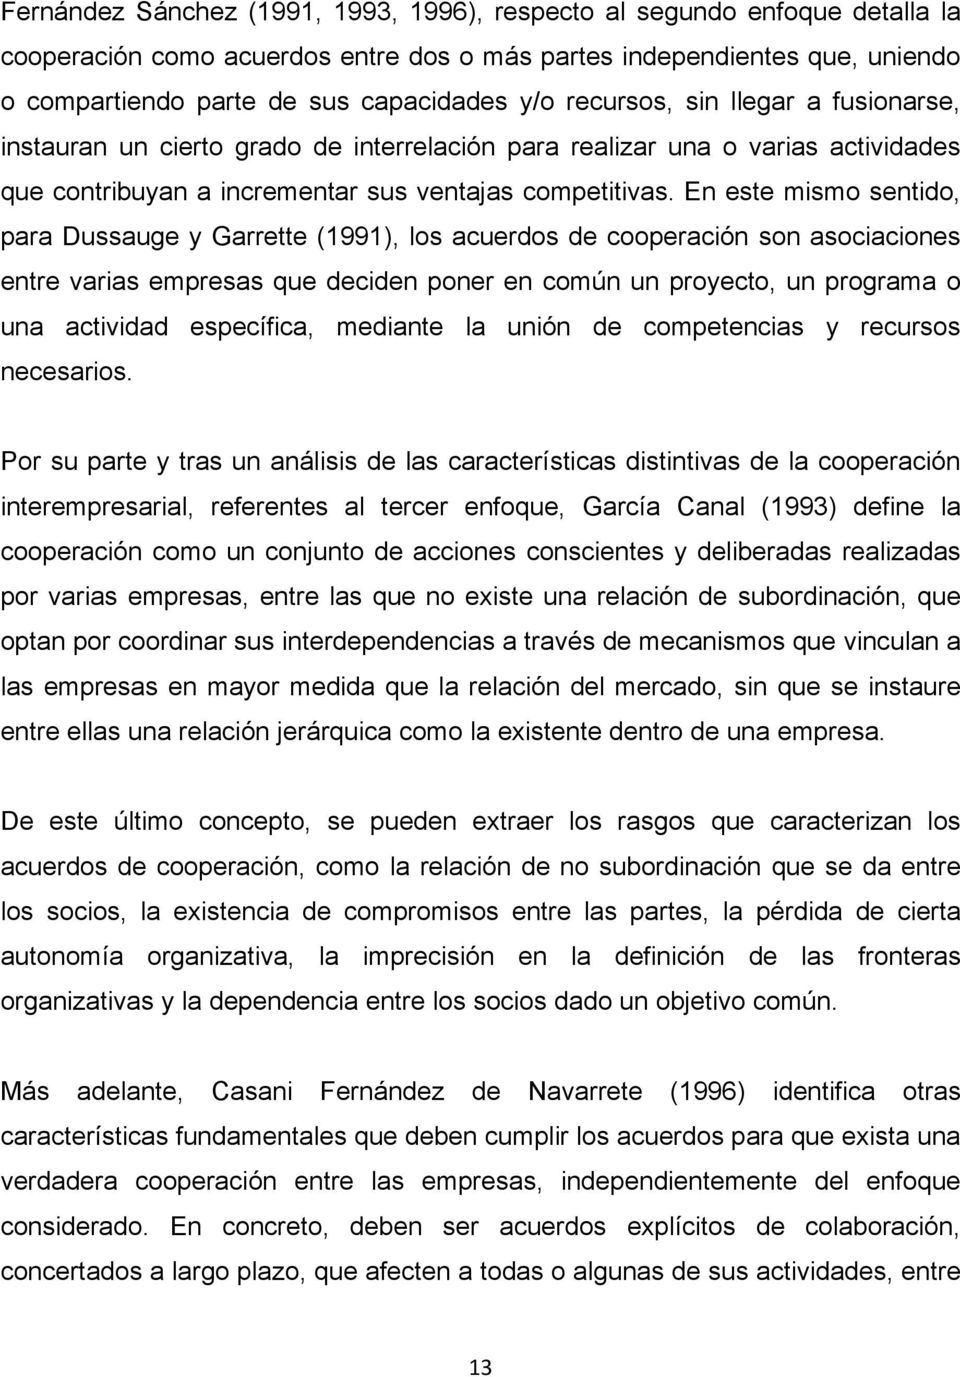 En este mismo sentido, para Dussauge y Garrette (1991), los acuerdos de cooperación son asociaciones entre varias empresas que deciden poner en común un proyecto, un programa o una actividad